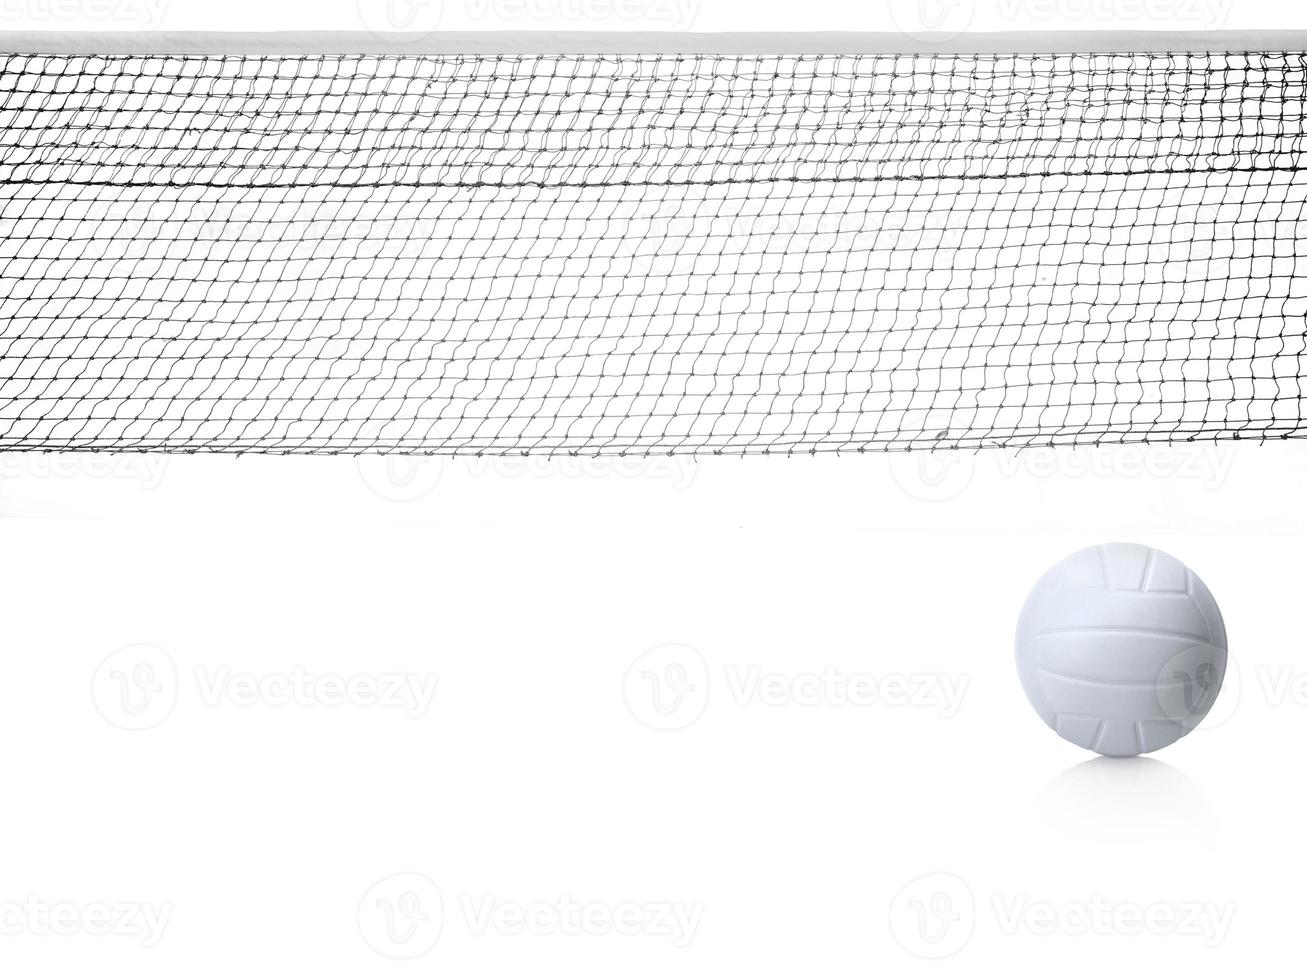 geïsoleerd volleybalnet op de witte achtergrond foto